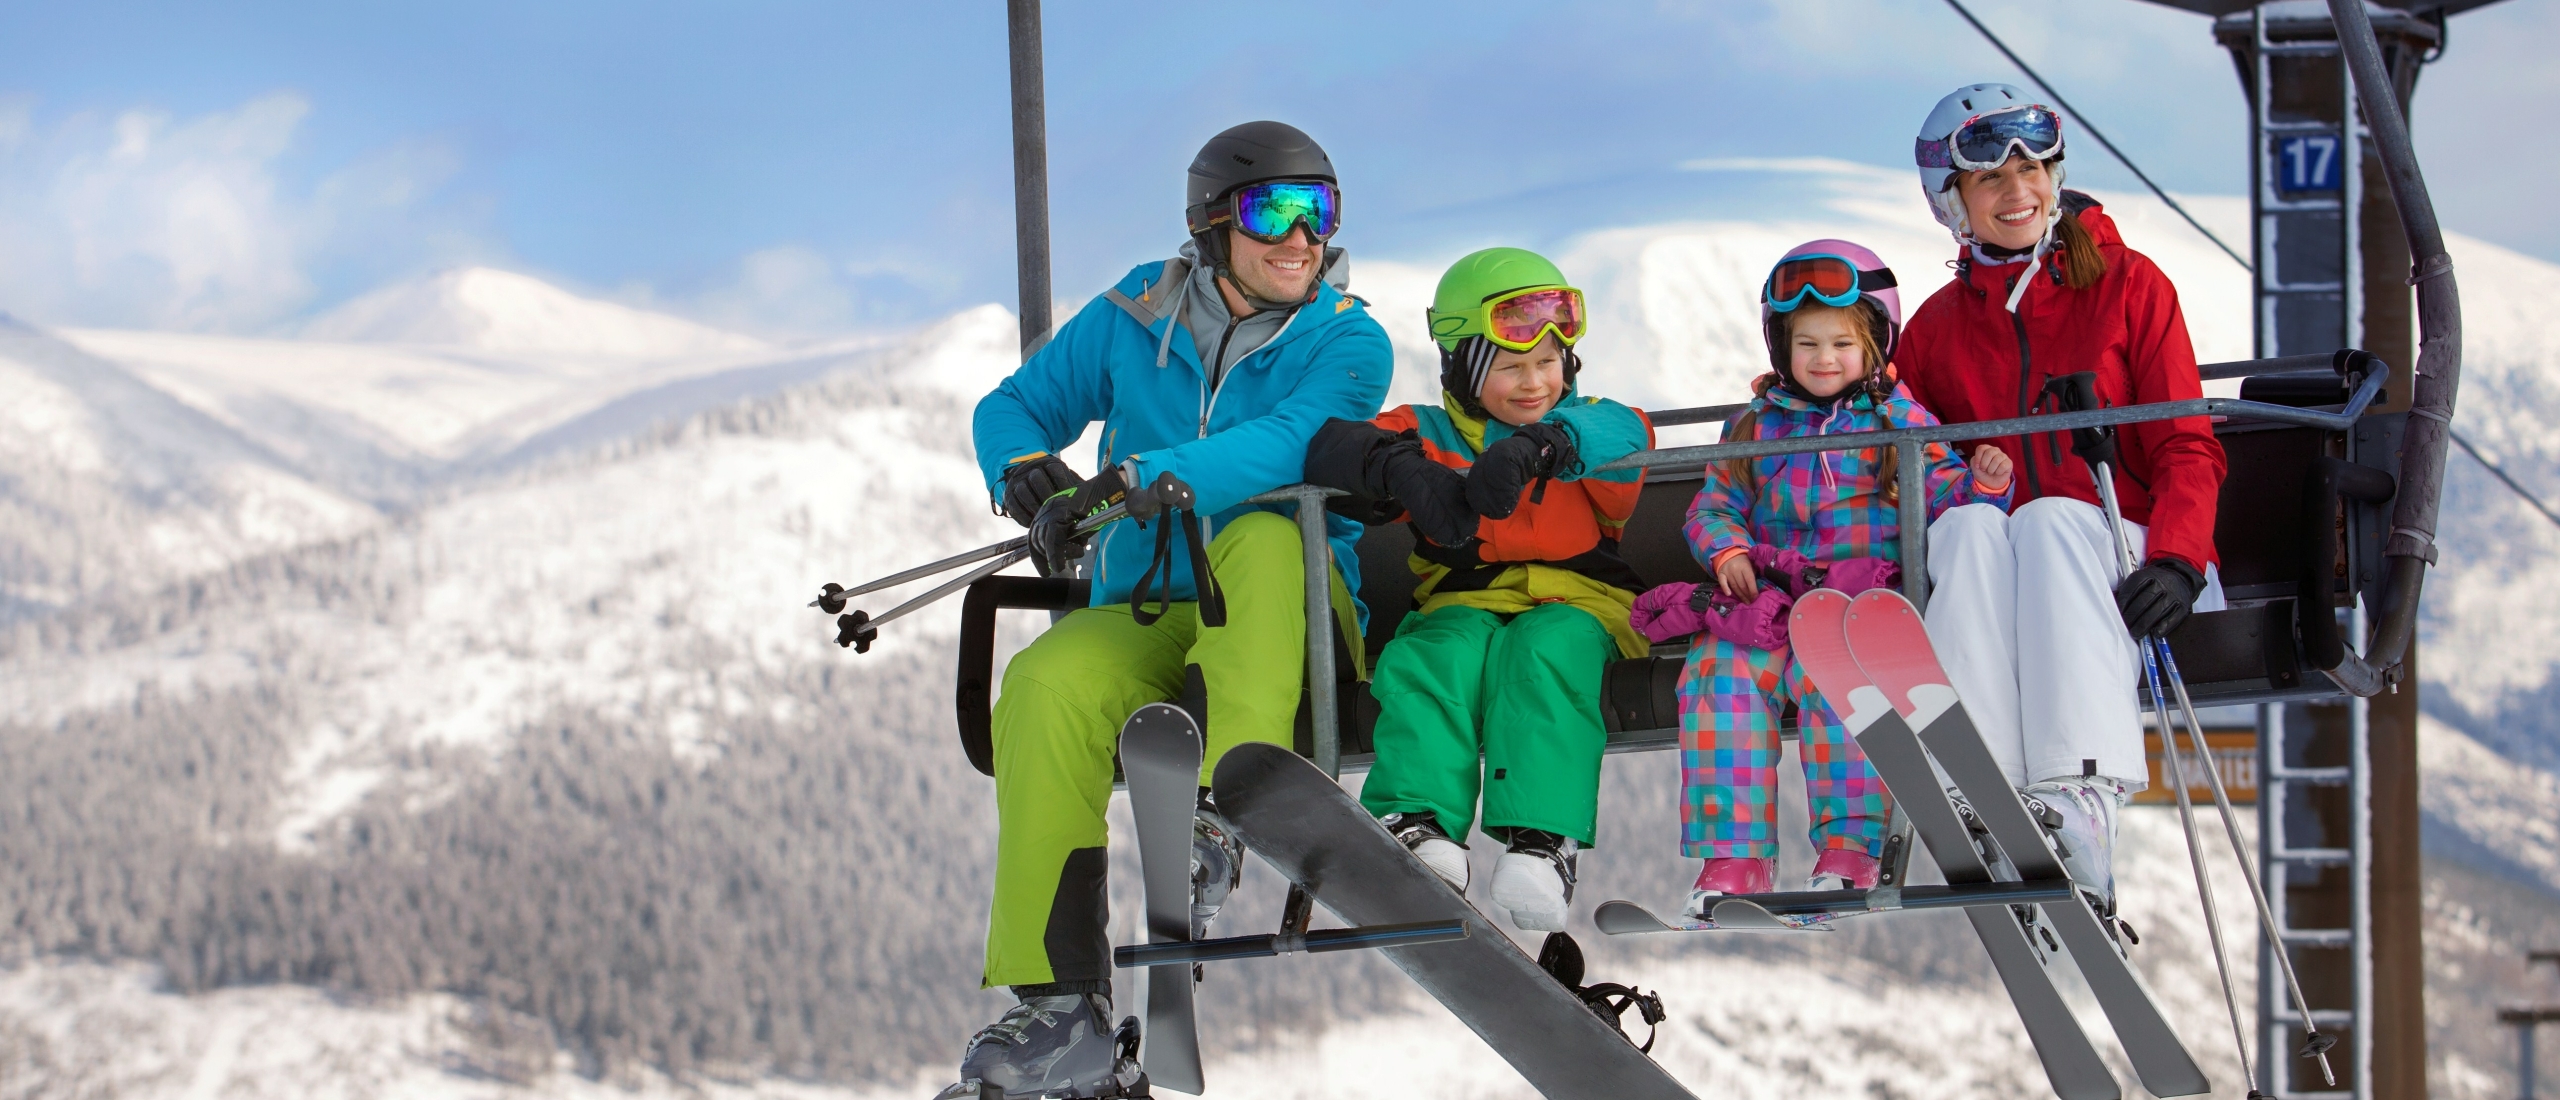 Wintersport mit Kindern - Die beste blaue Skipiste Tschechiens